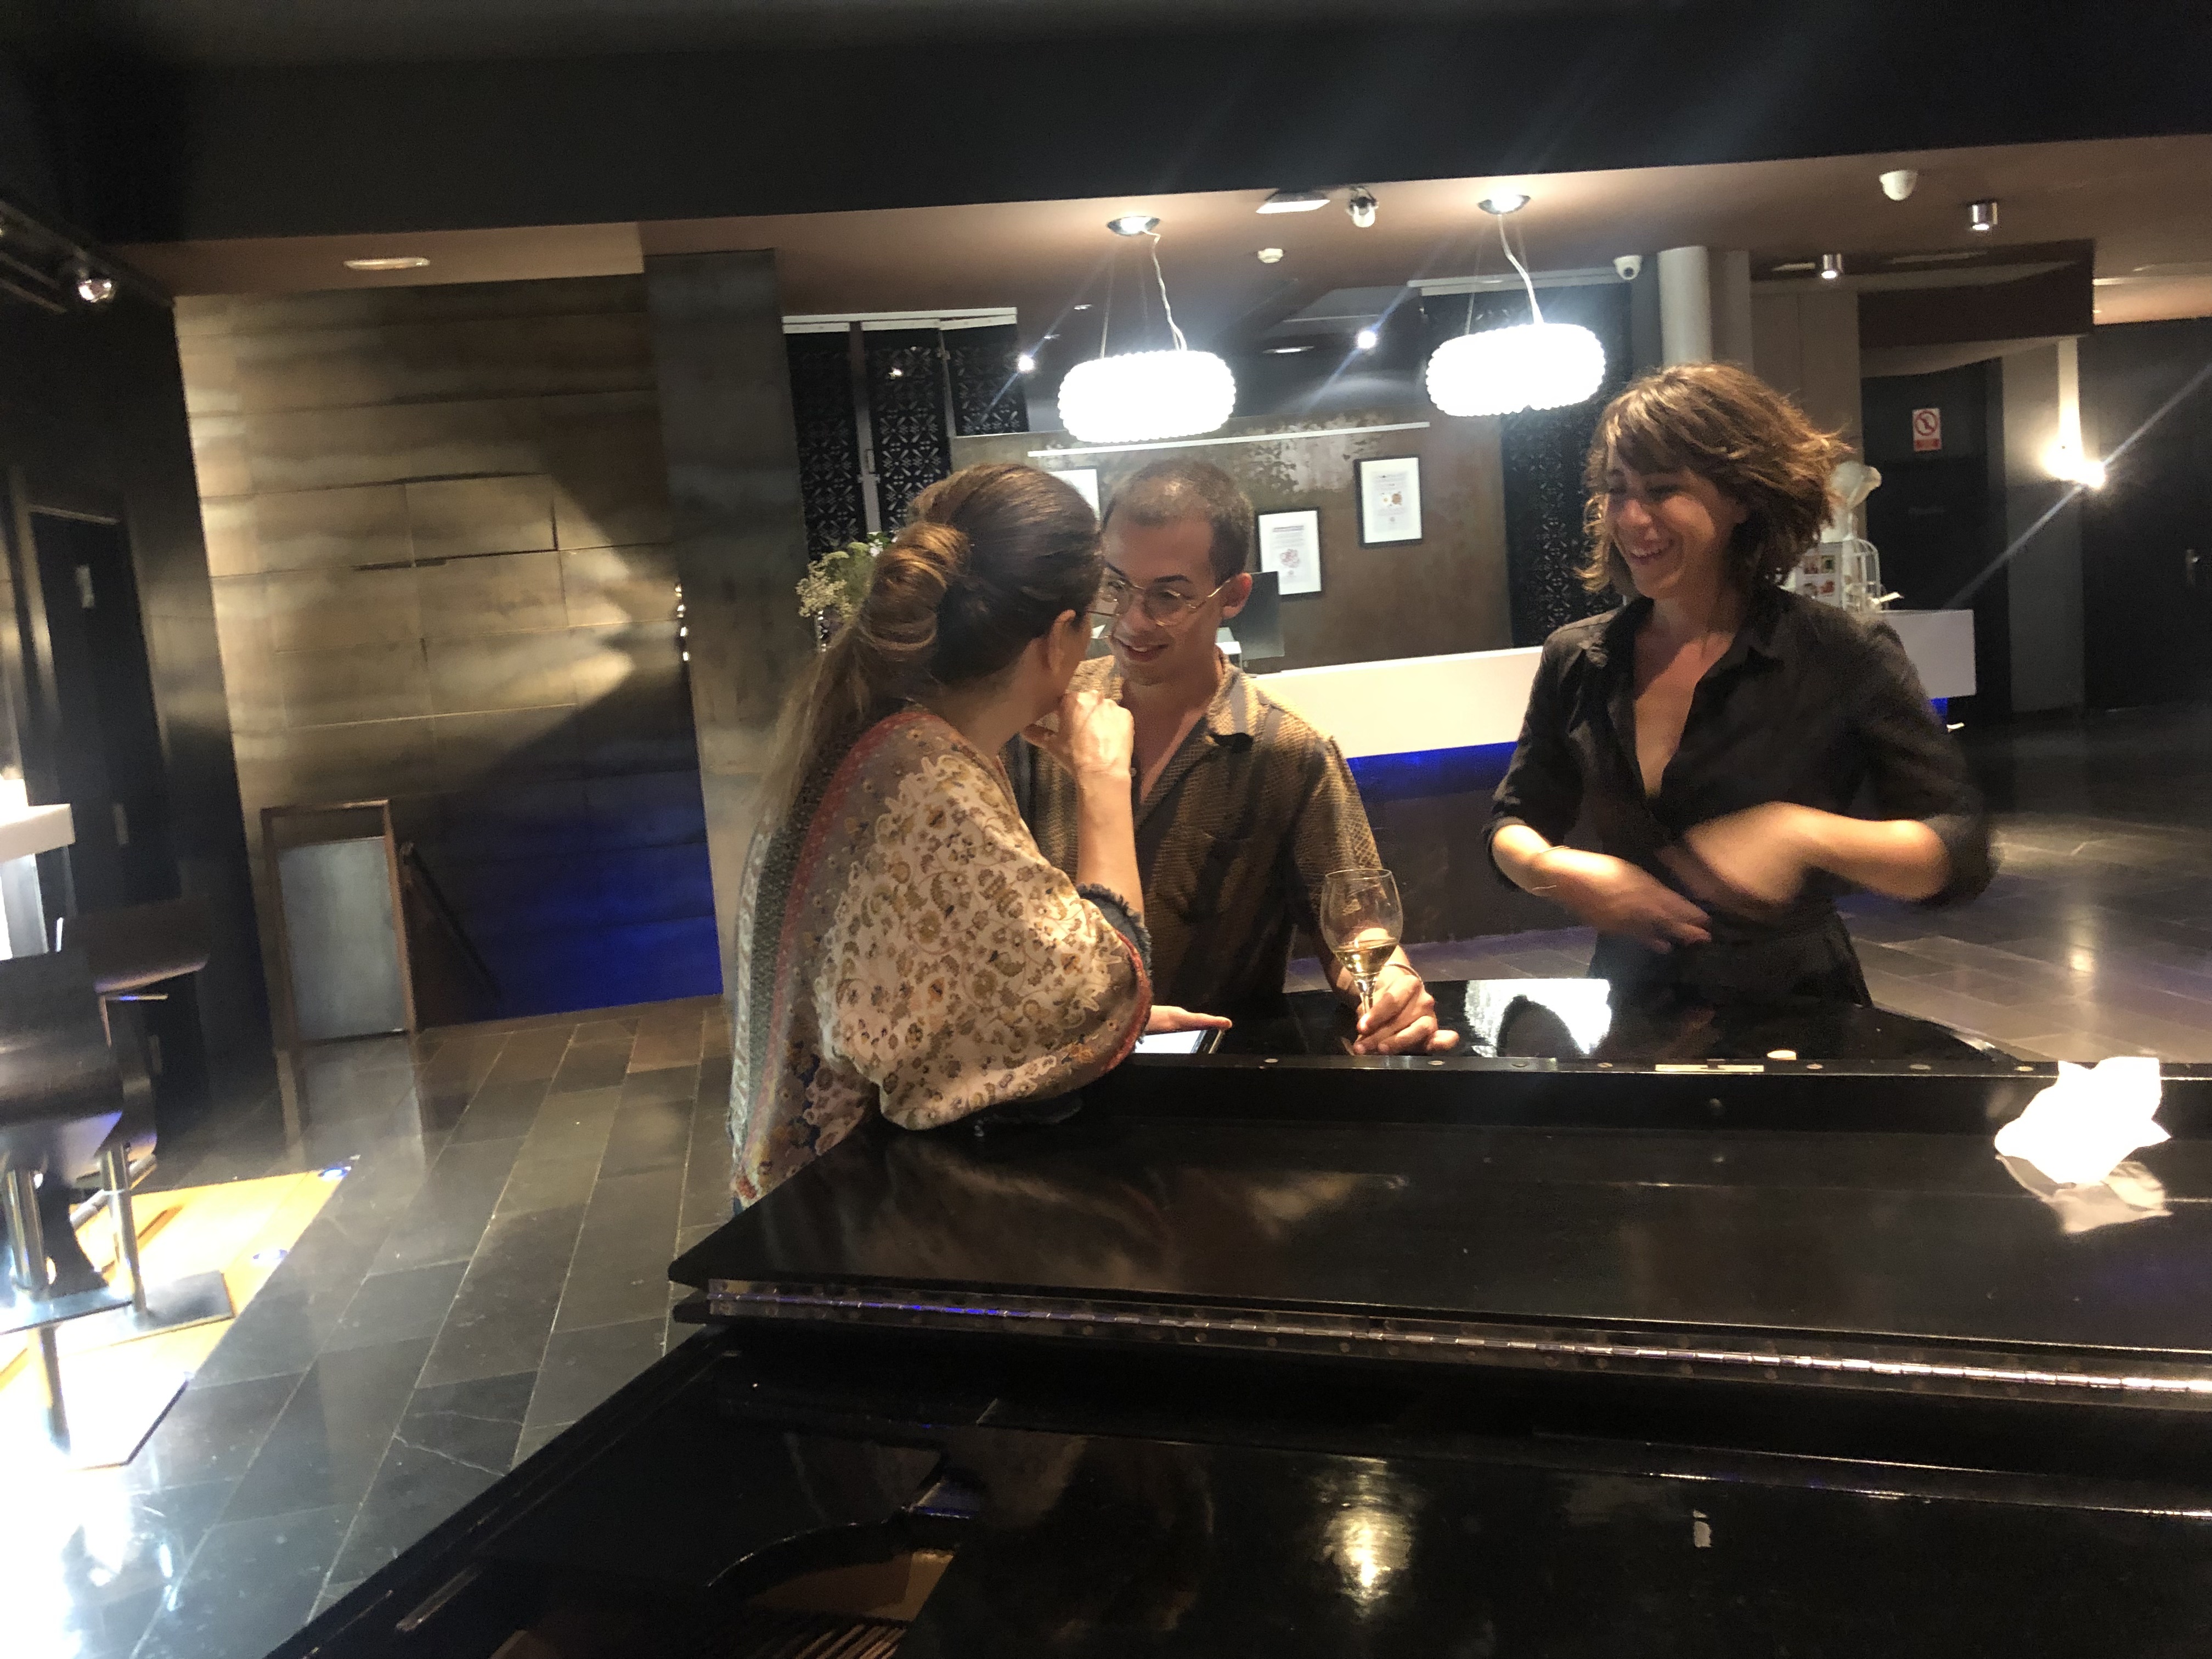 Compartimos reunión al piano con Gaby Goldman, una muy buena idea de Samanta Villar